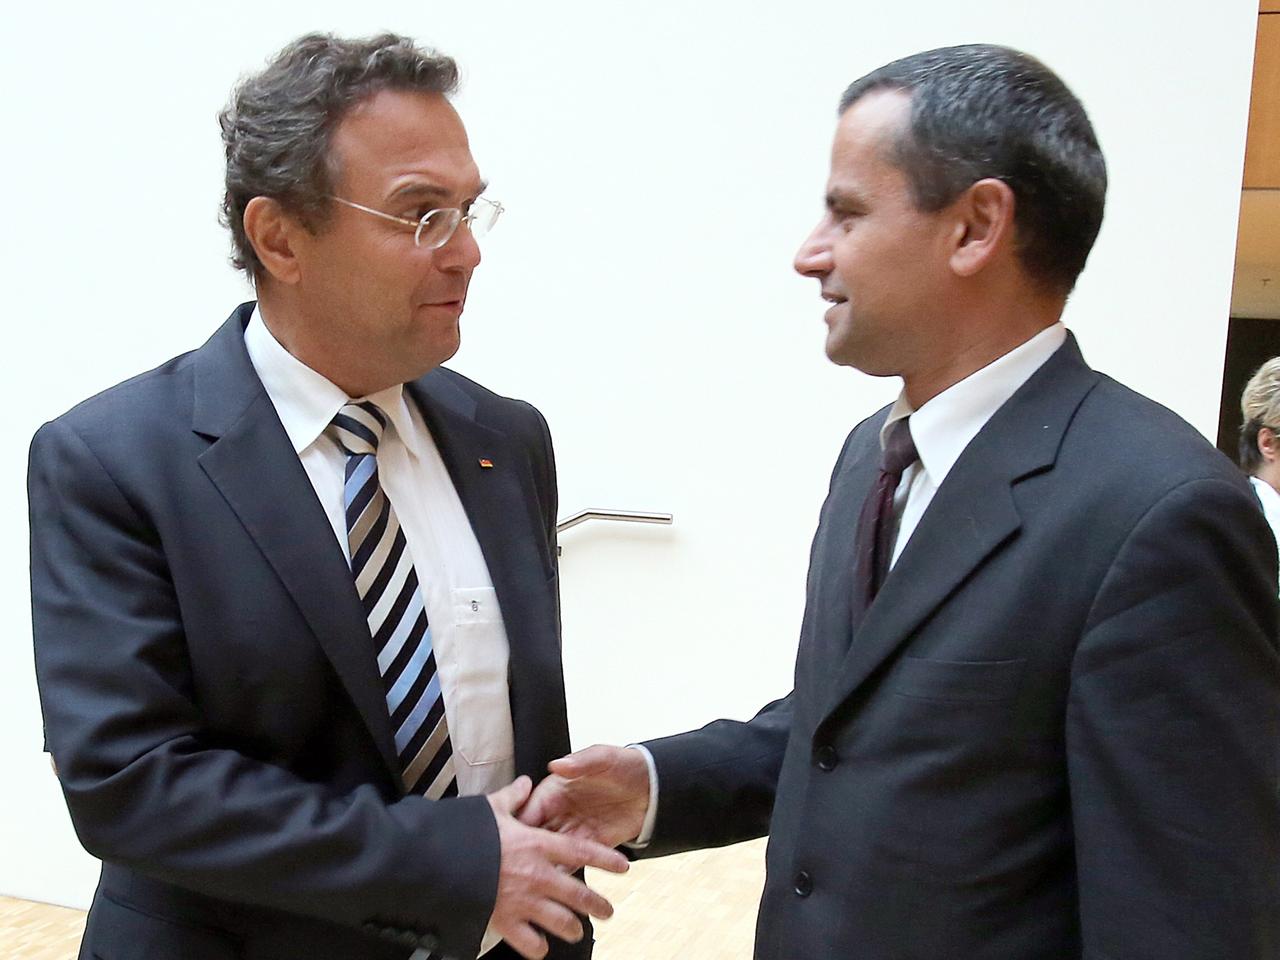 Bundesinnenminister Hans-Peter Friedrich bei einer Begegnung mit Sebastian Edathy am Rande einer Sitzung des NSU-Untersuchungsausschusses im Oktober 2012.